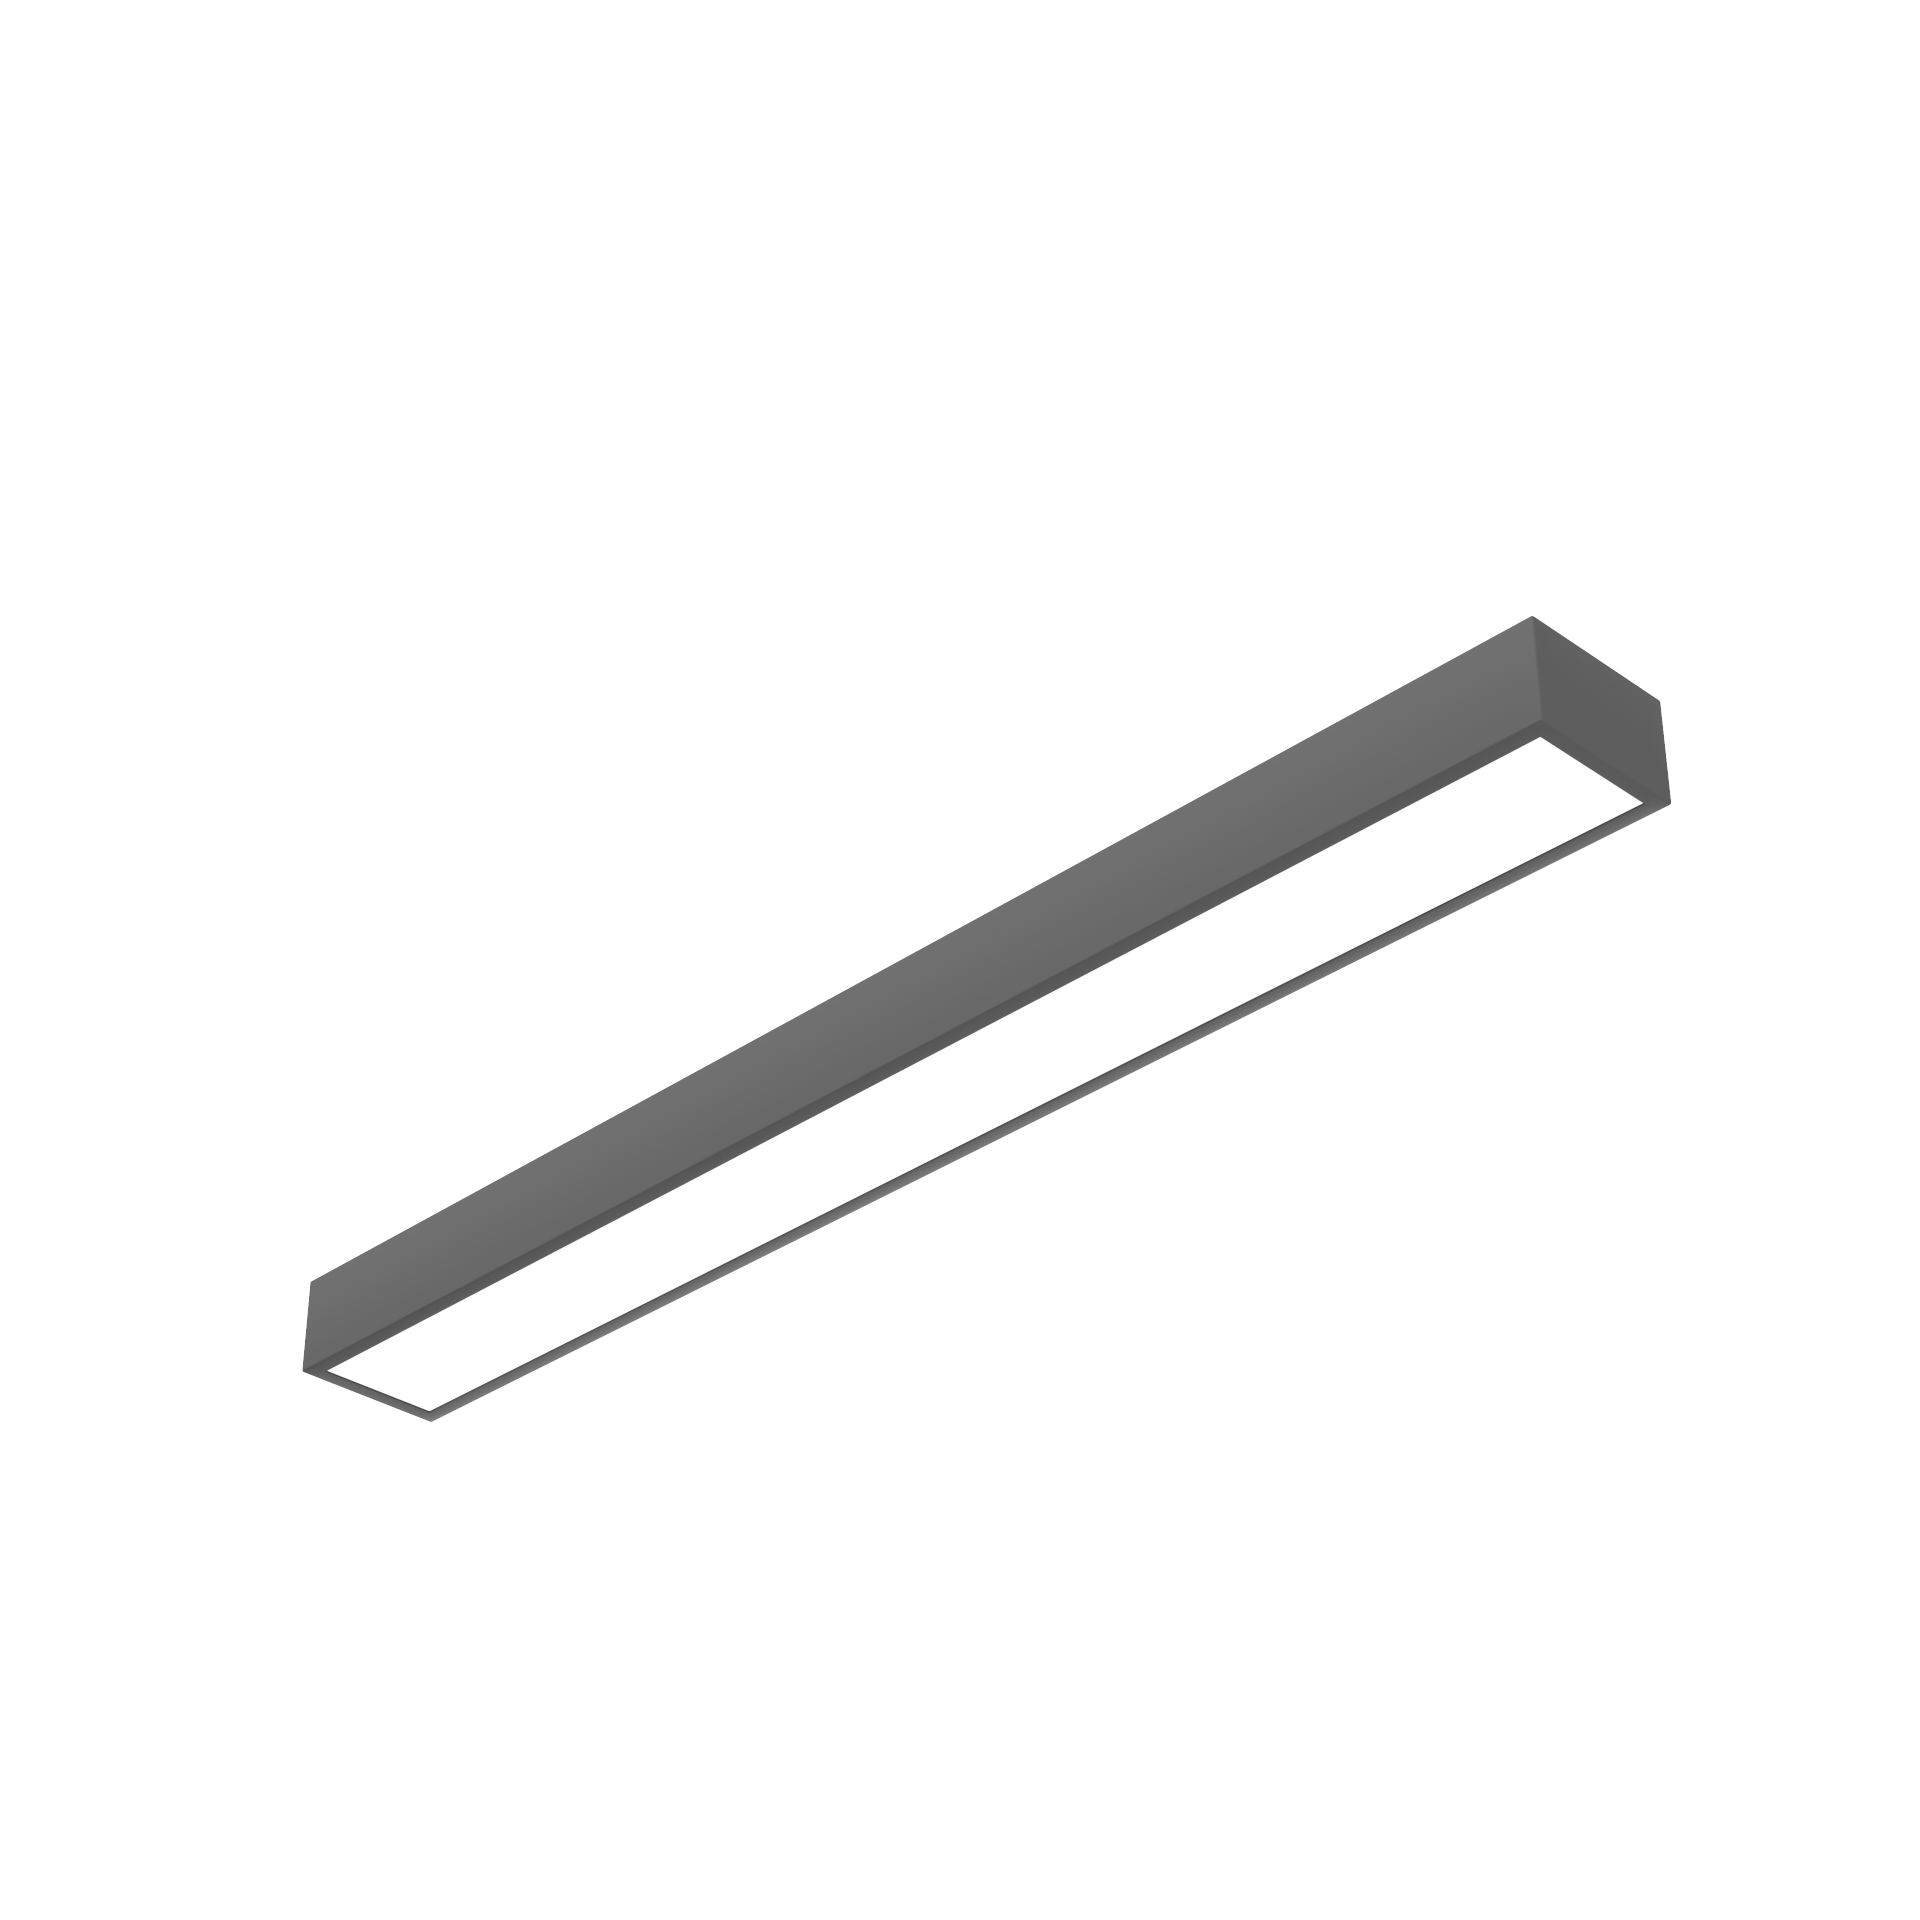 Светодиодный светильник VARTON Gexus Line Up'n'Down 1500x160x110 мм 35 Вт/50 Вт 4000 К RAL9005 черный муар опал-микропризма DALI